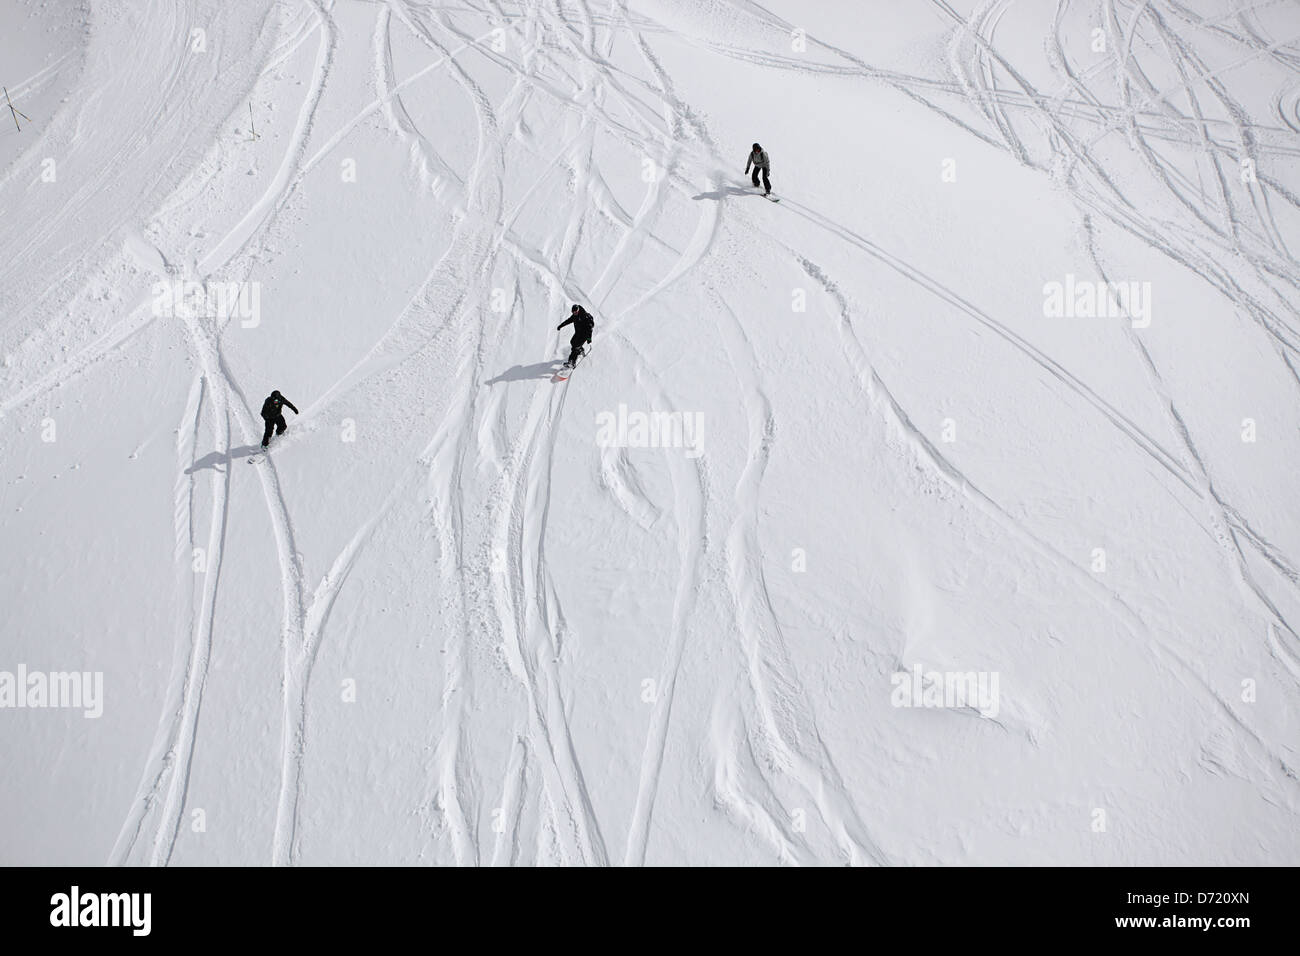 Drei Snowboarder in Aktion. Typische Reise Art Foto aus einem Skiurlaub in den französischen Alpen Stockfoto